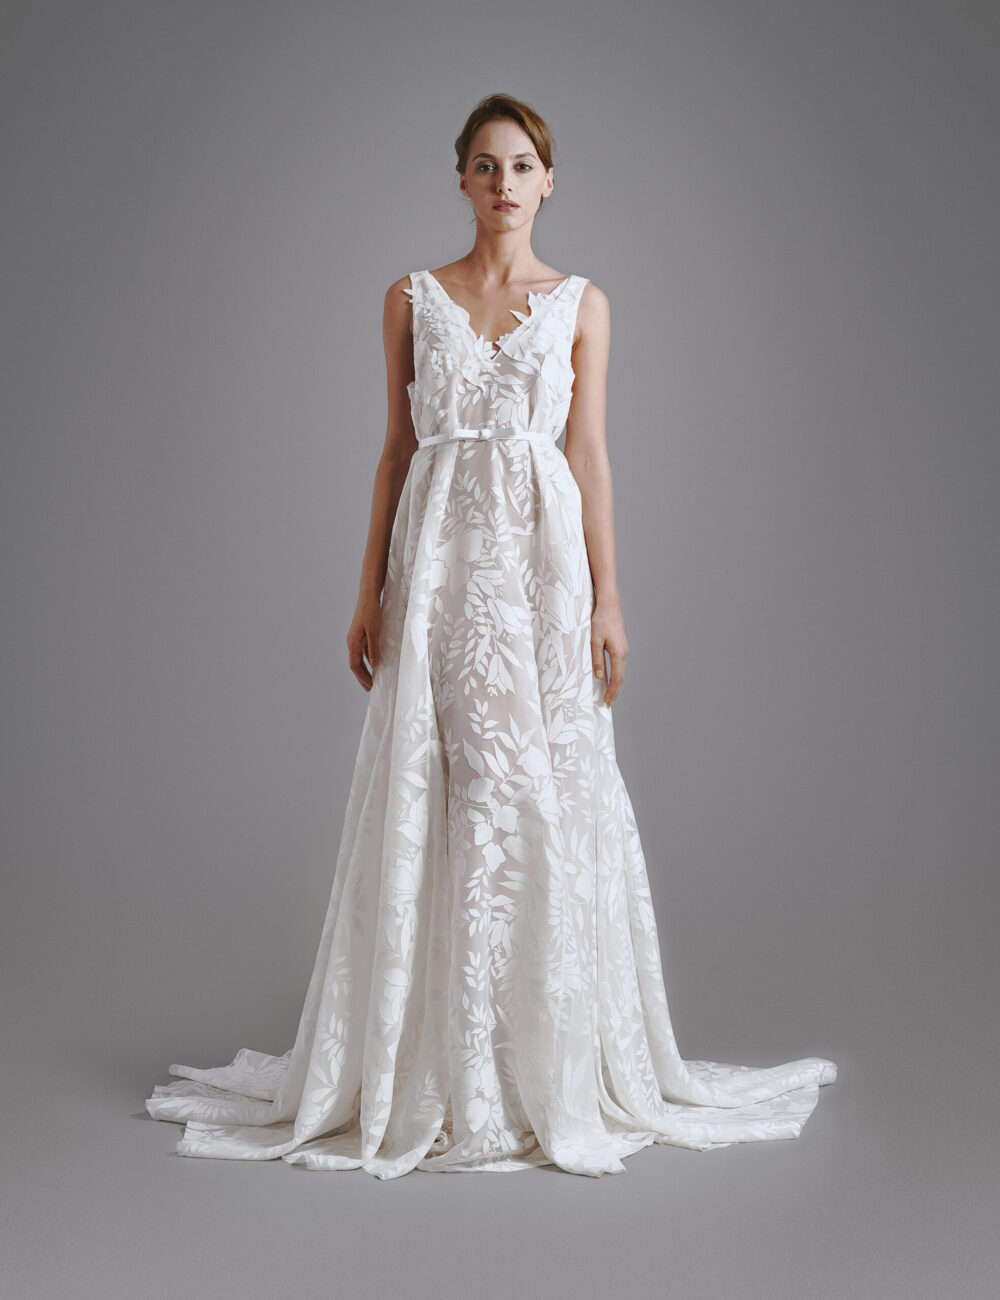 SILVER DOLLAR Bridal Gown - BHARB Bridal - Wedding Dresses